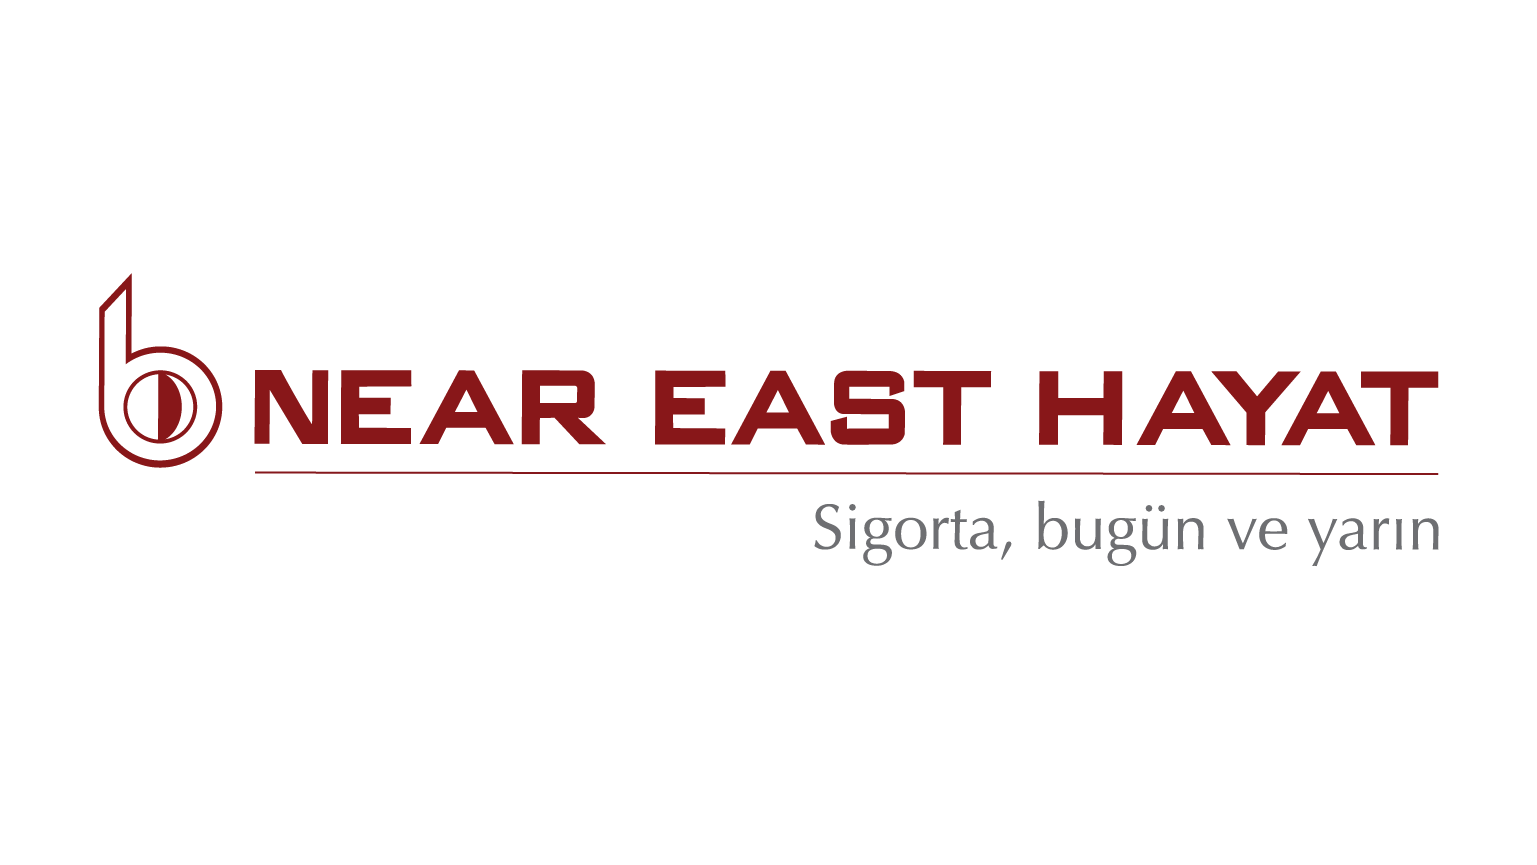 Near East Hayat